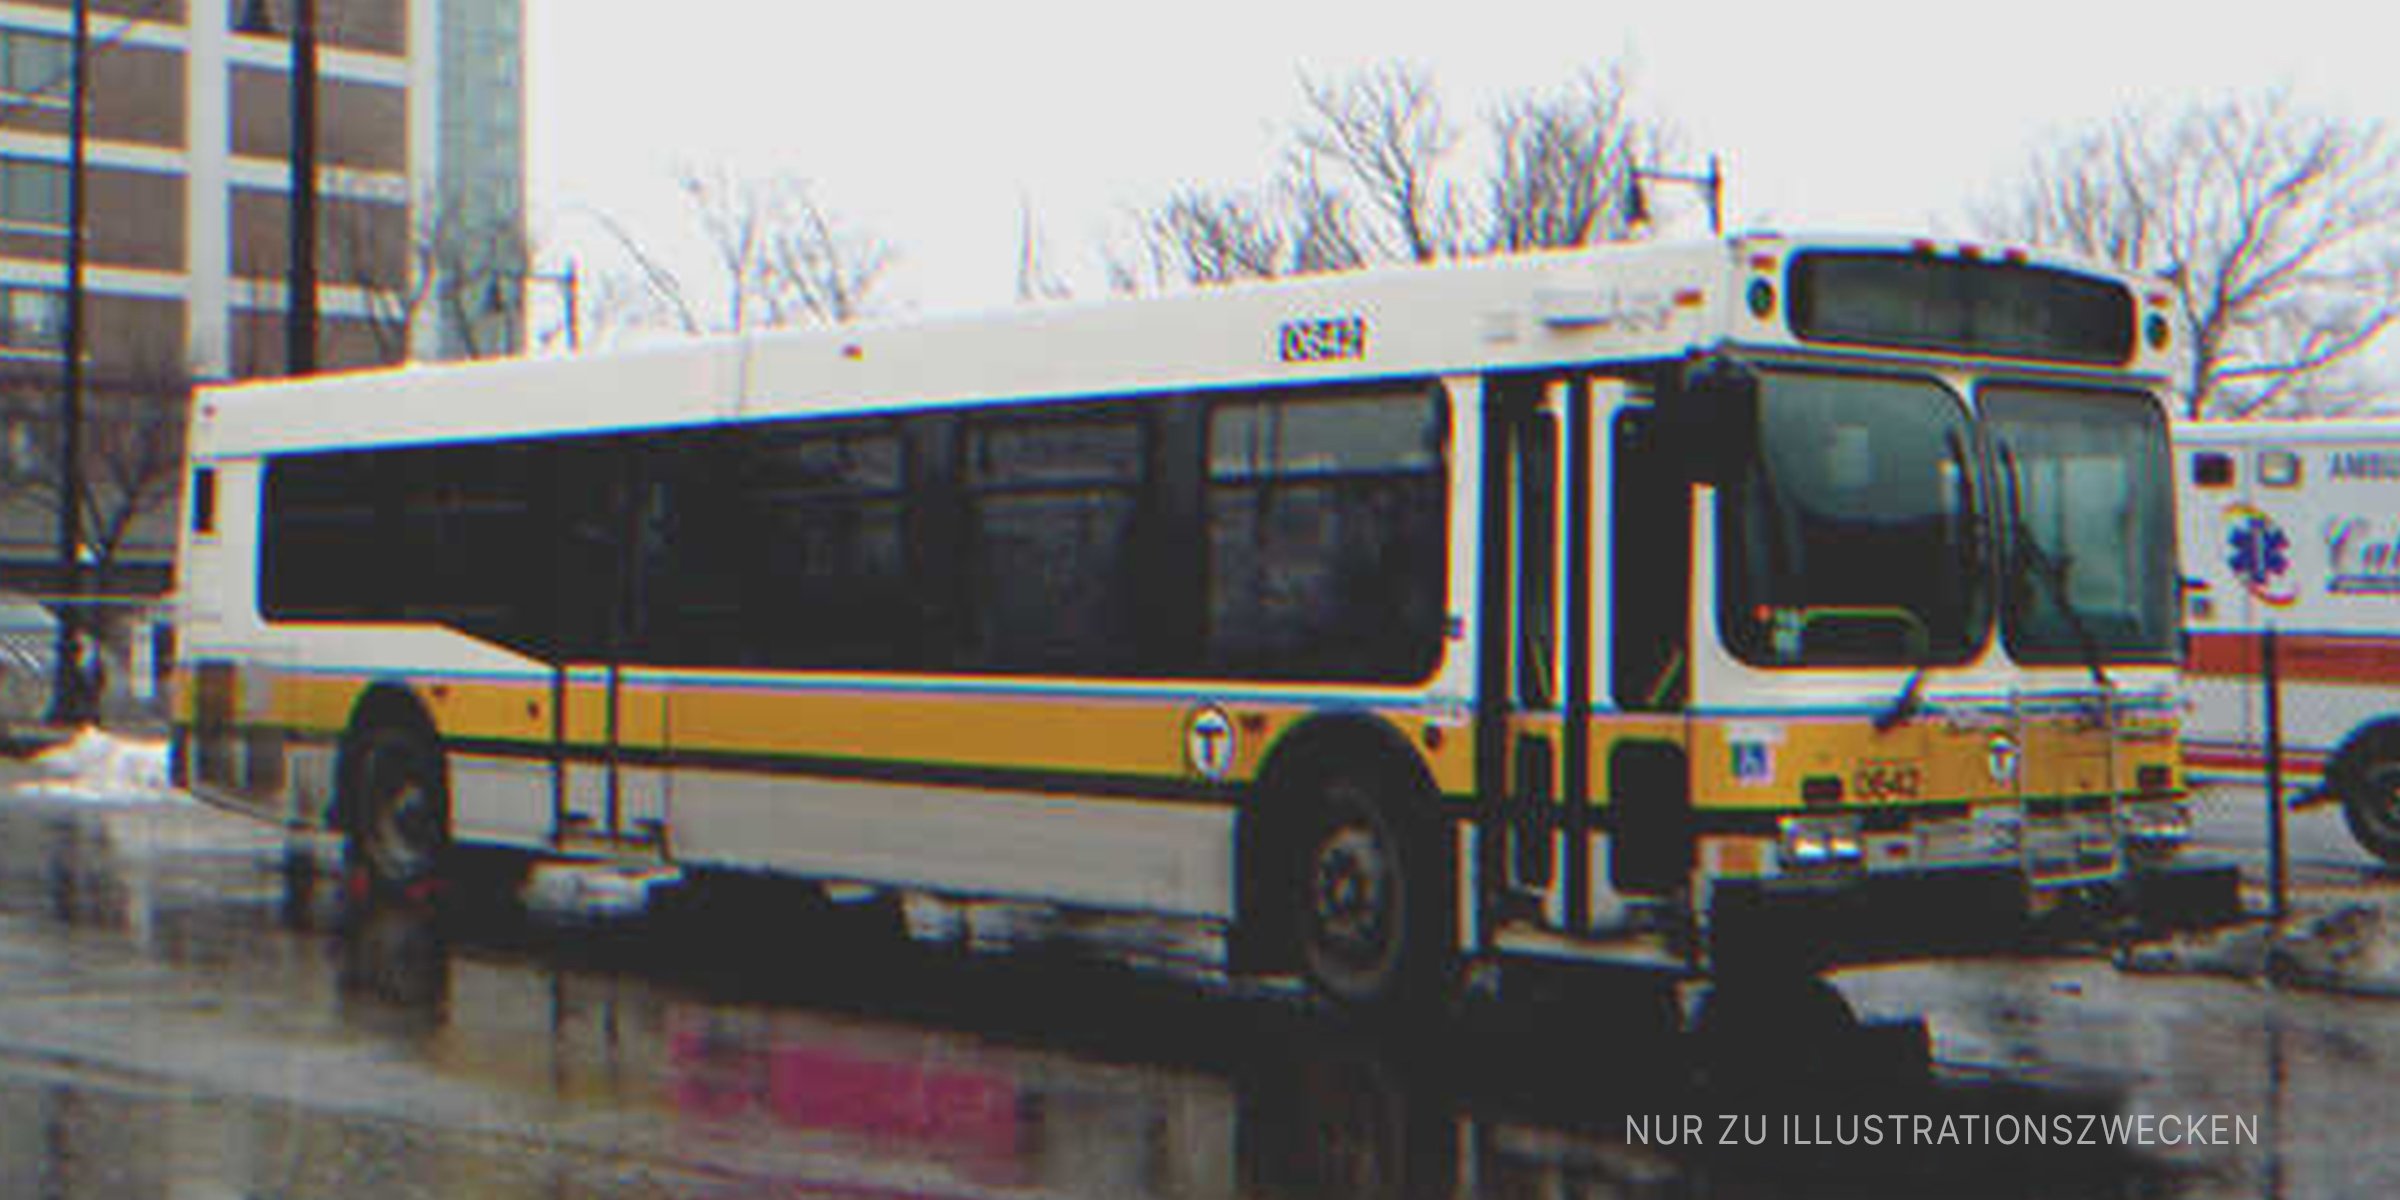 Ein Stadtbus. | Quelle: Flickr/JLaw45 (CC BY 2.0)